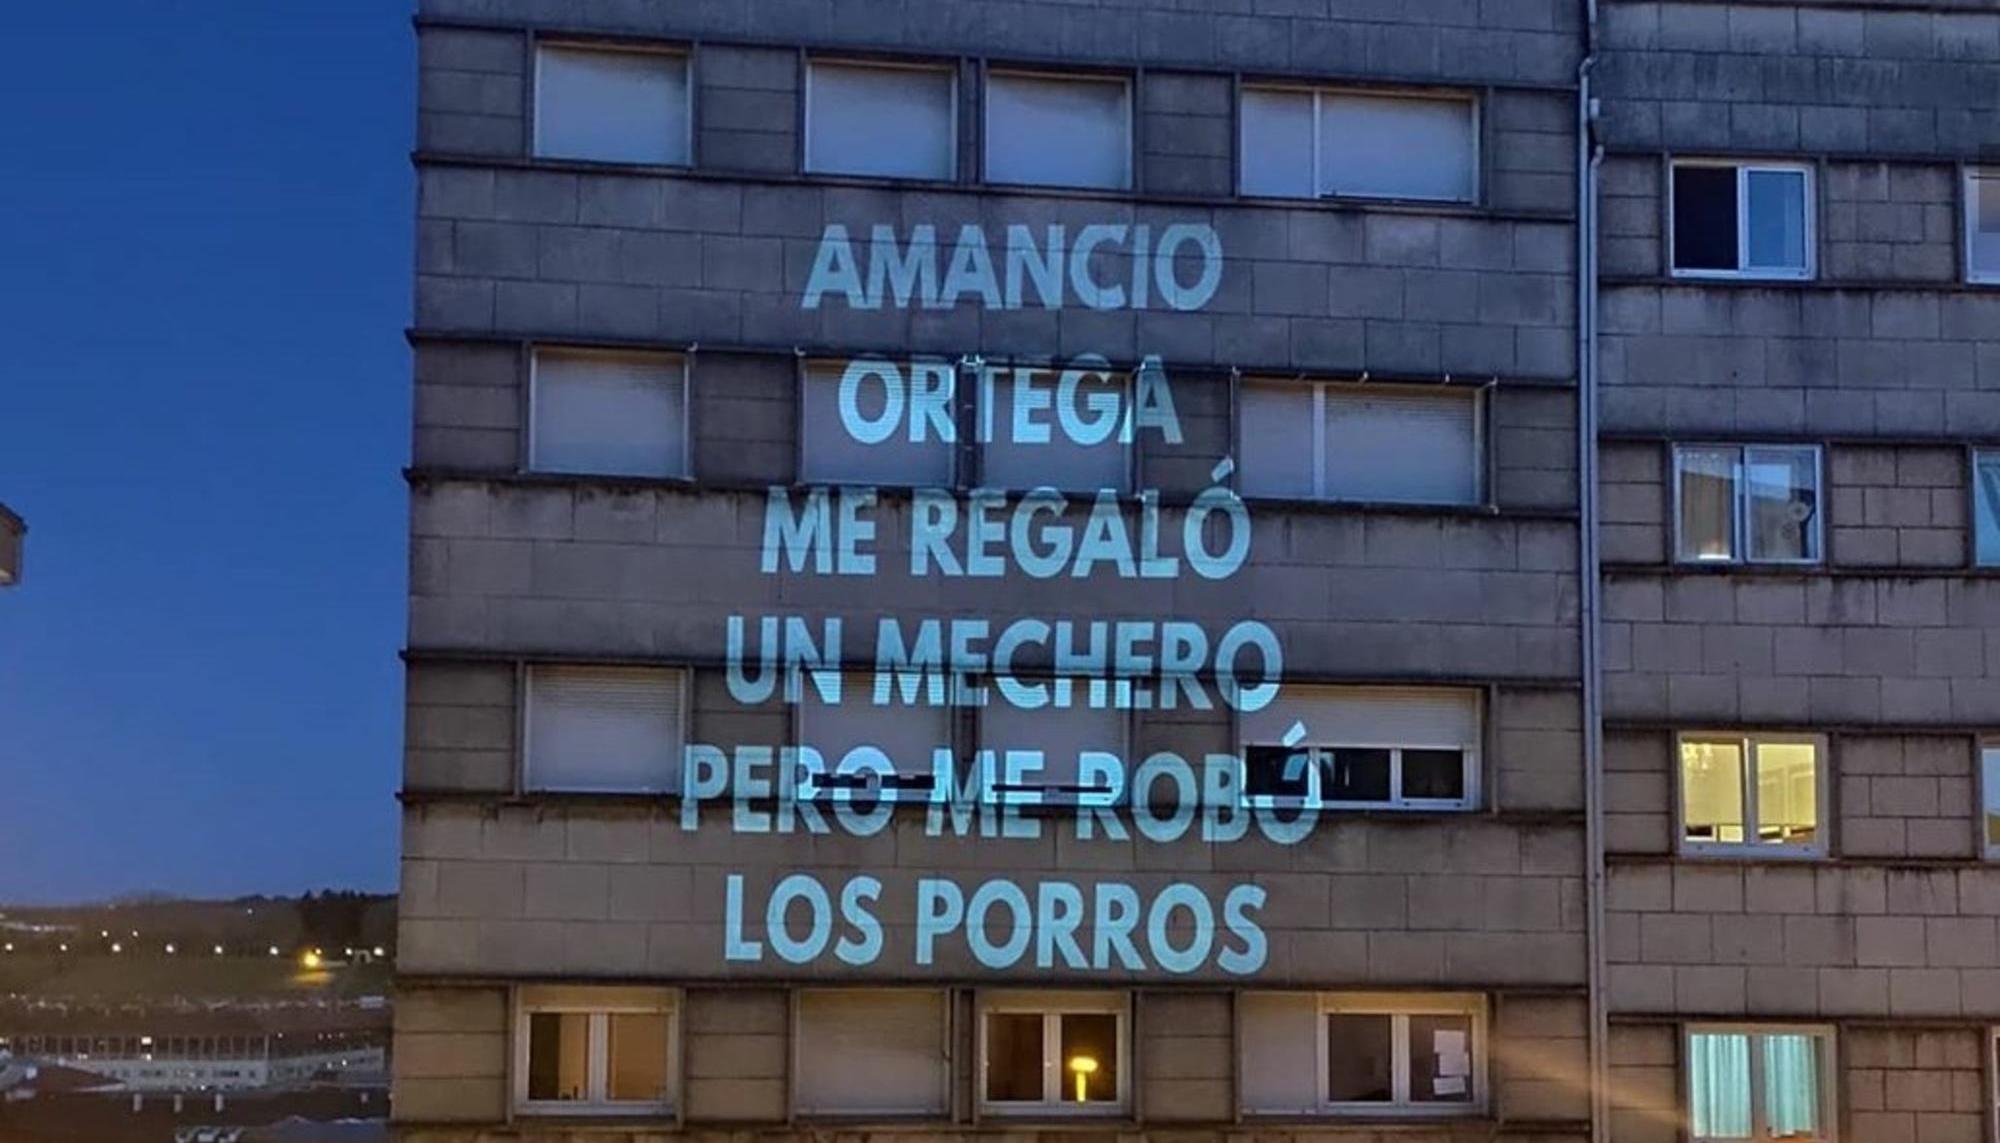 Proyección artística en Santiago de Compostela sobre la supuesta filantropía del dueño de Inditex y hombre más rico de España.